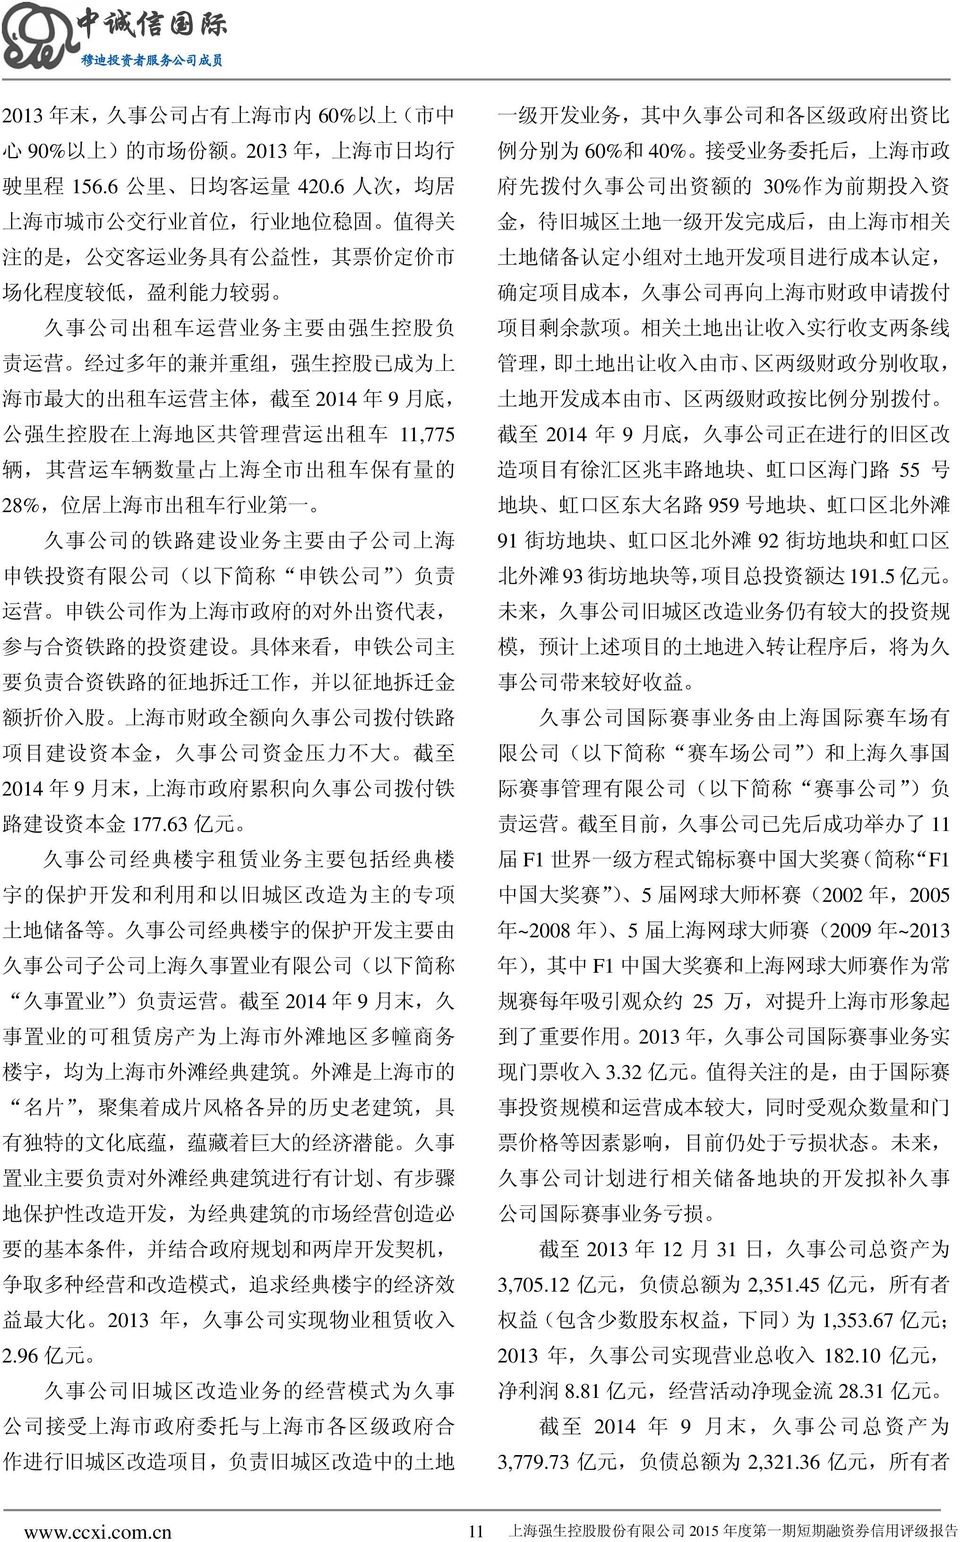 市 最 大 的 出 租 车 运 营 主 体, 截 至 2014 年 9 月 底, 公 强 生 控 股 在 上 海 地 区 共 管 理 营 运 出 租 车 11,775 辆, 其 营 运 车 辆 数 量 占 上 海 全 市 出 租 车 保 有 量 的 28%, 位 居 上 海 市 出 租 车 行 业 第 一 久 事 公 司 的 铁 路 建 设 业 务 主 要 由 子 公 司 上 海 申 铁 投 资